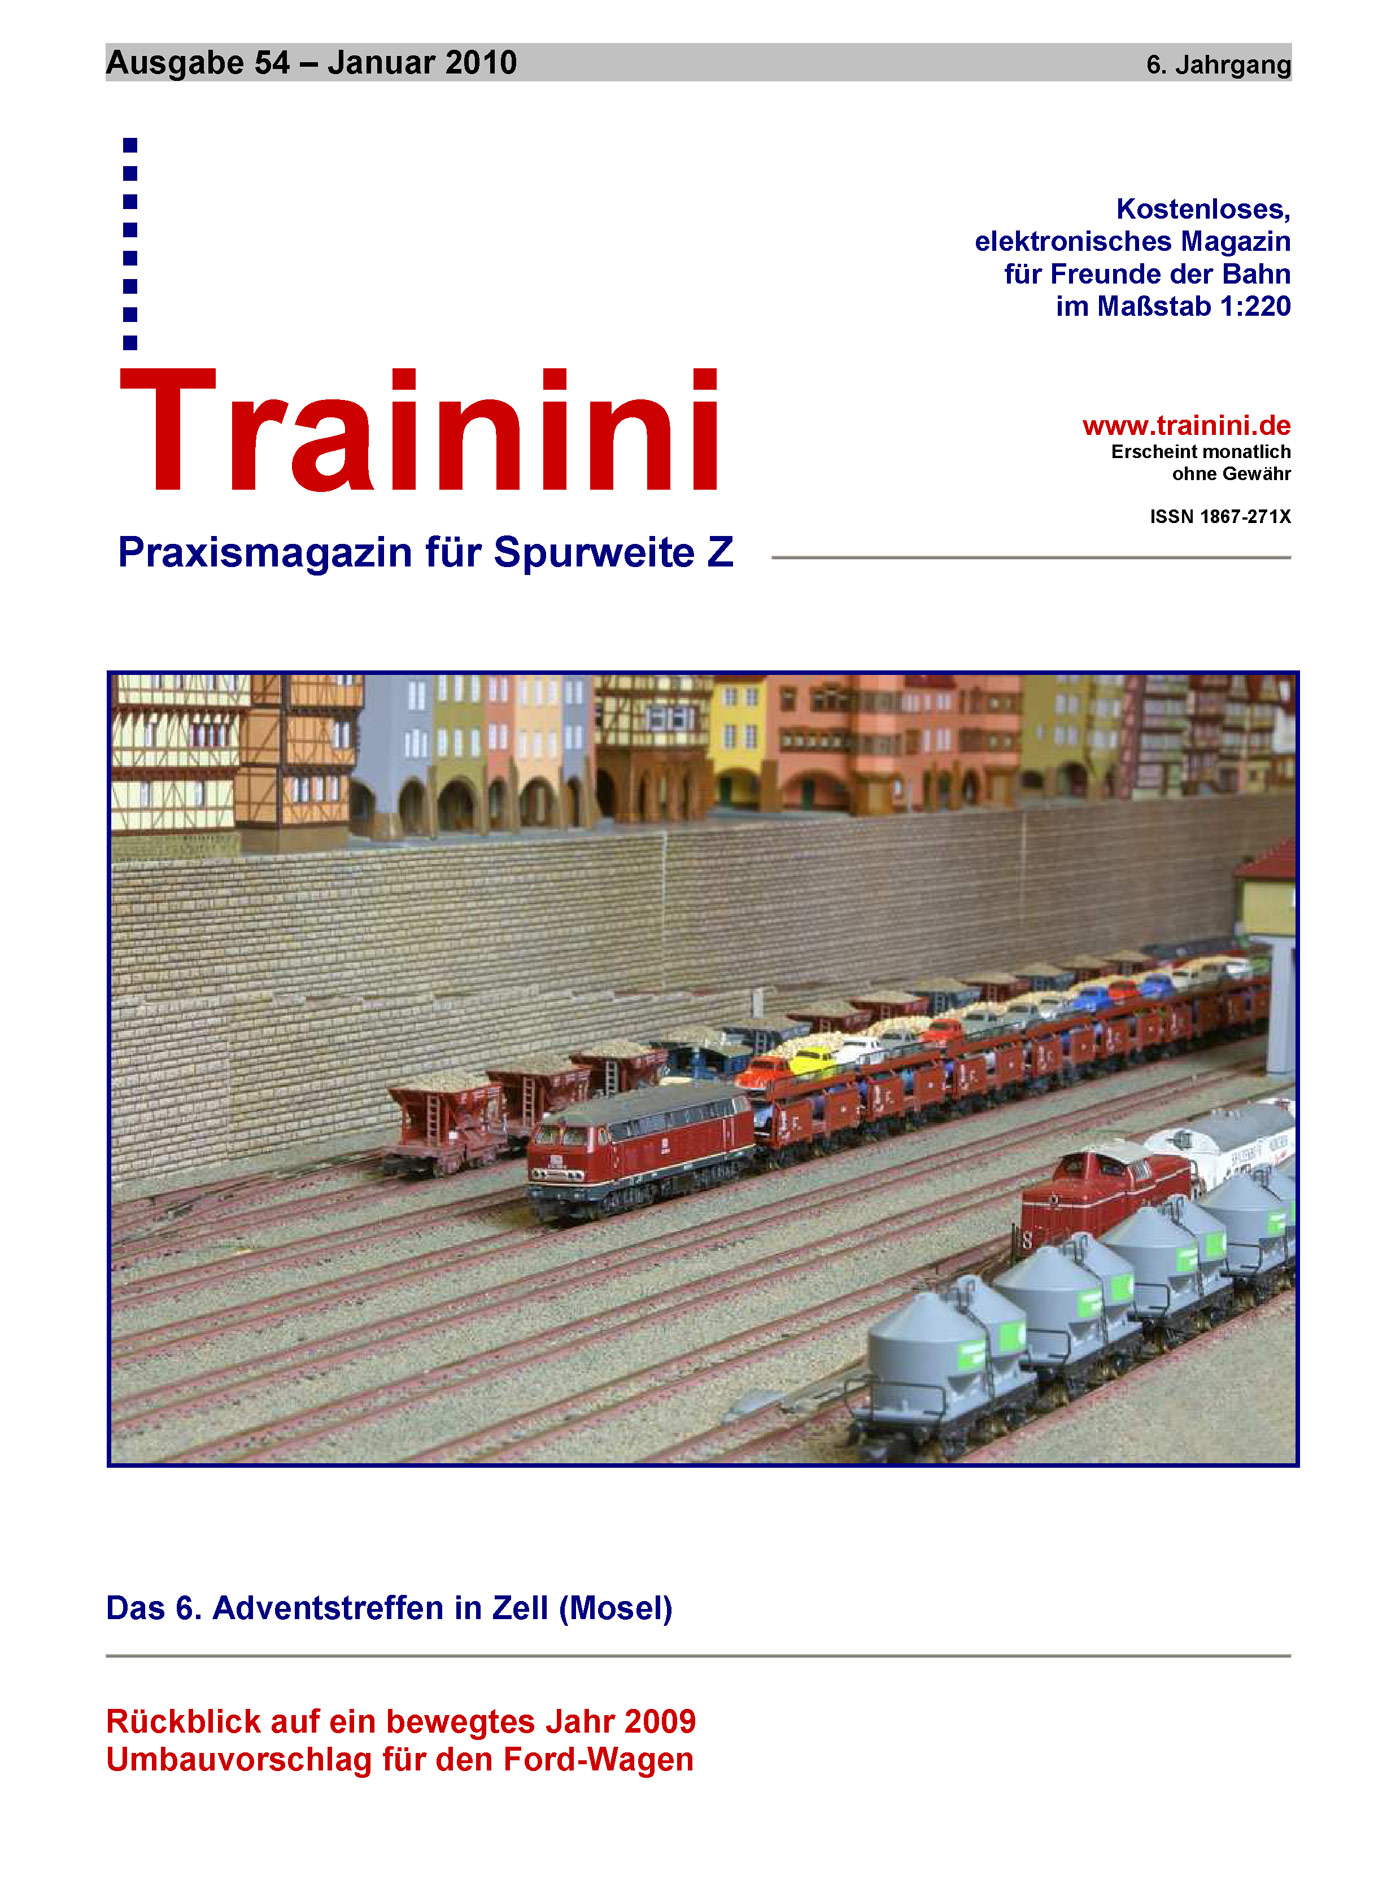 Trainini Ausgabe Januar 2010